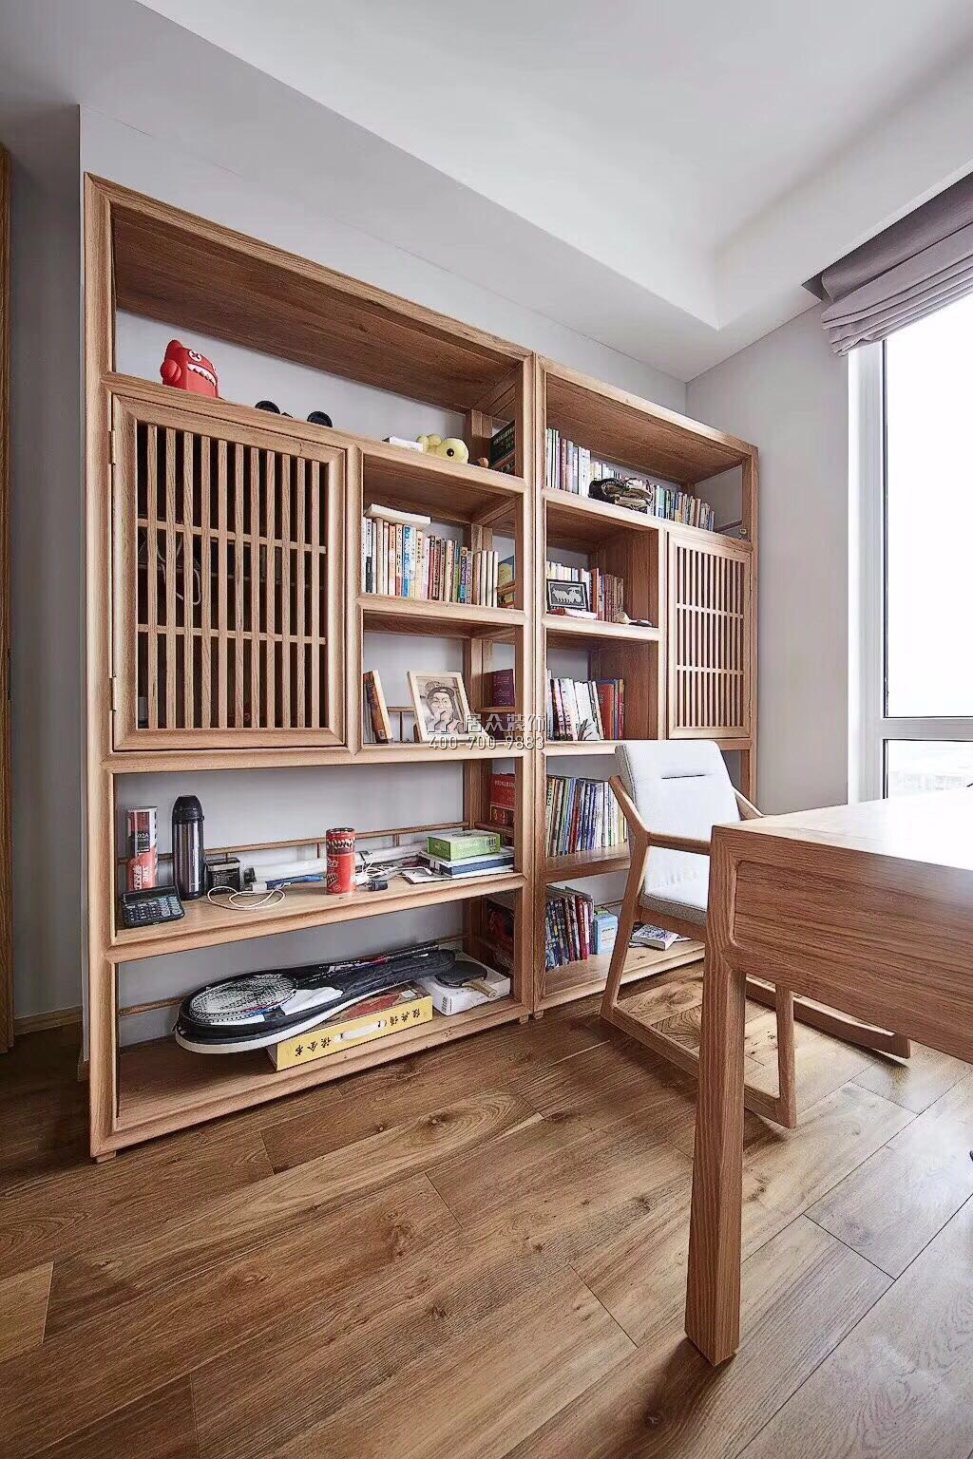 中洲中央公園二期120平方米現代簡約風格平層戶型書房裝修效果圖